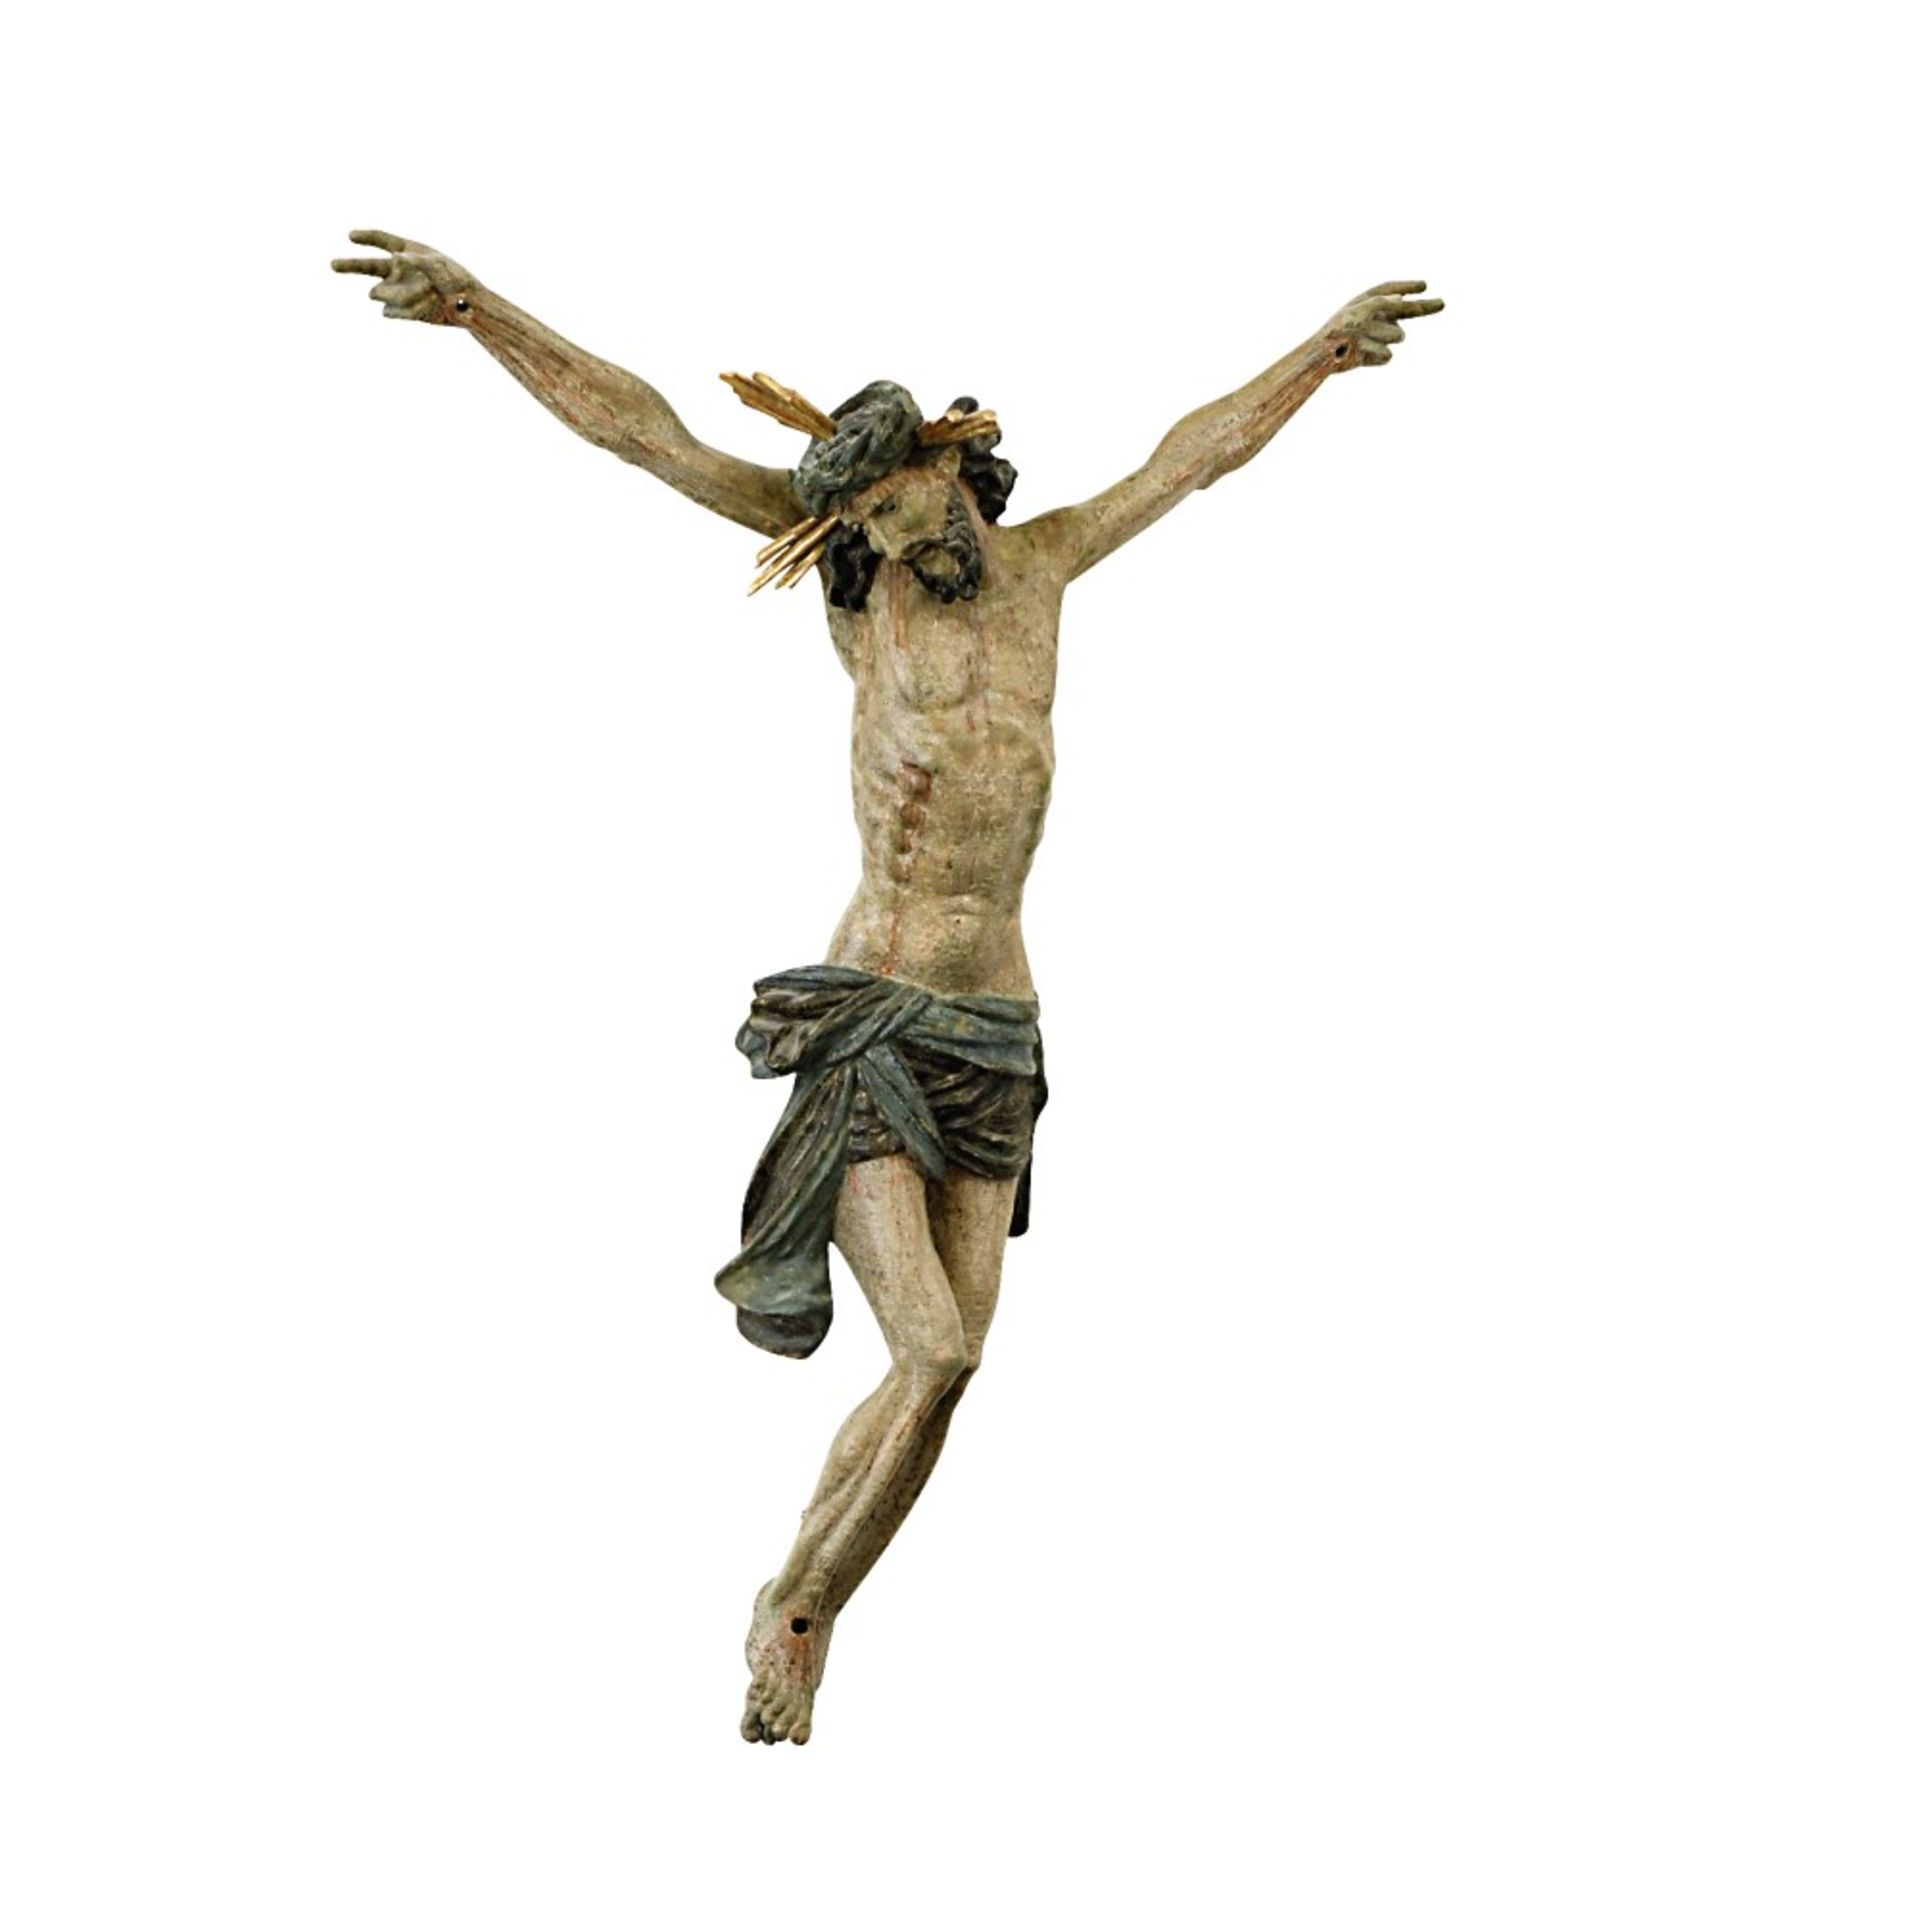 Christus-CorpusSüddeutsch, wohl 18. Jh.Holz, geschnitzt, Farb- und Goldfassung. Dreinag